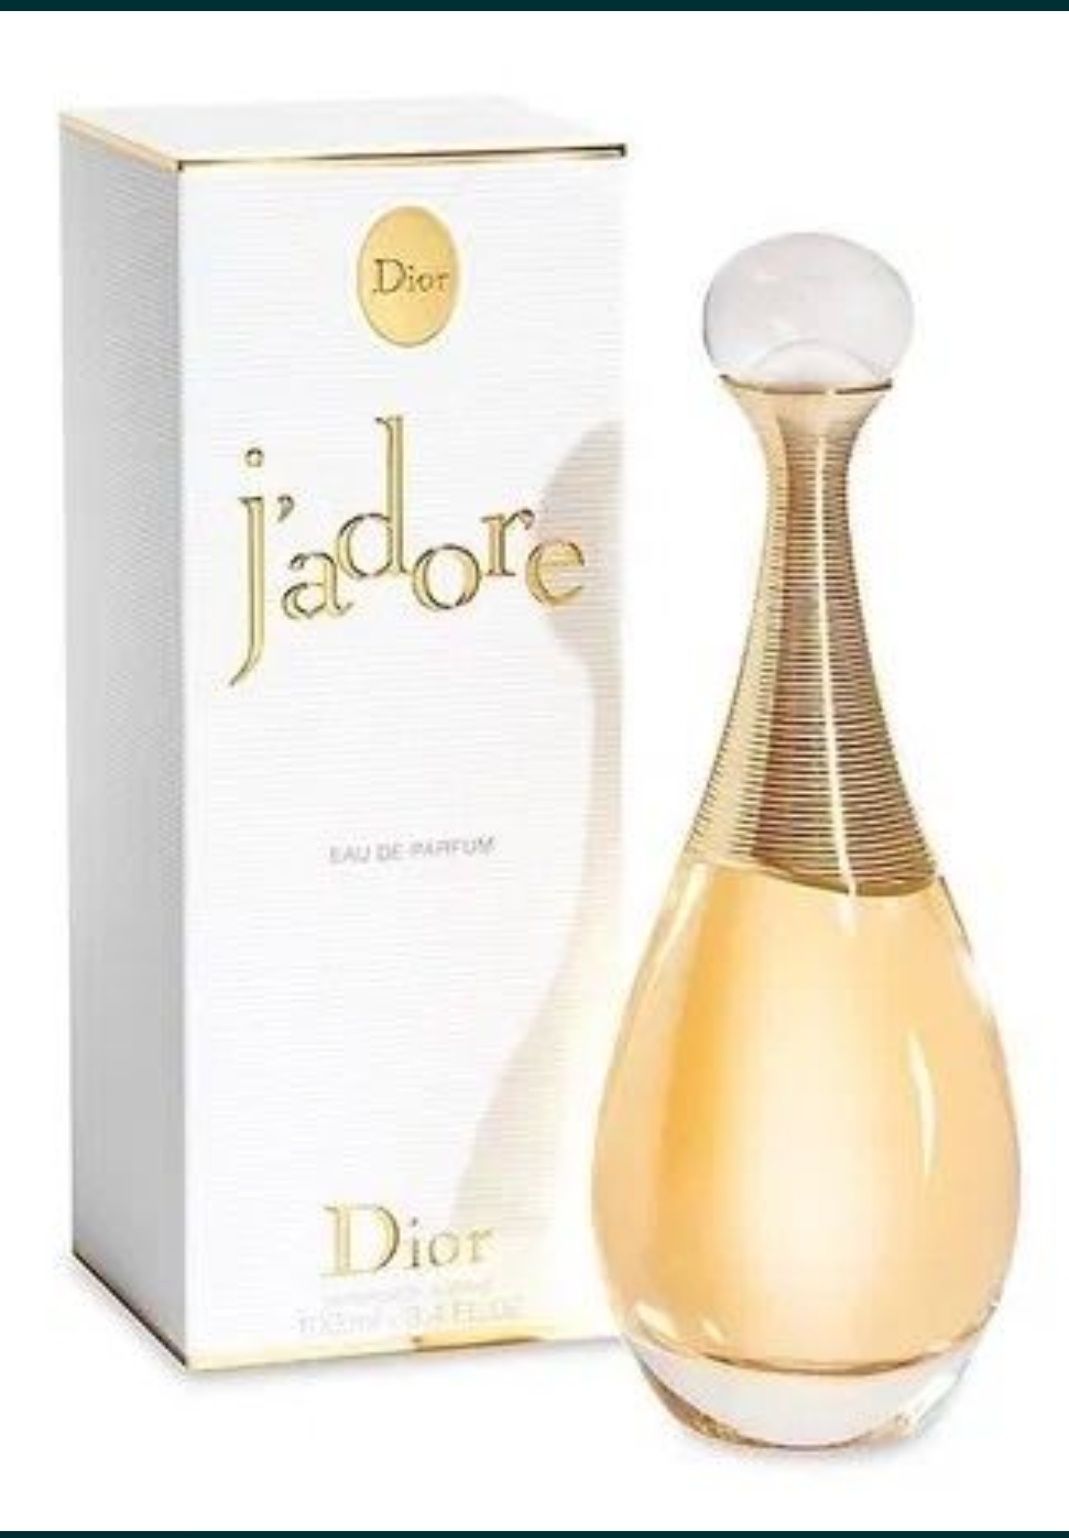 Духи Jadore Dior французские, оригинал